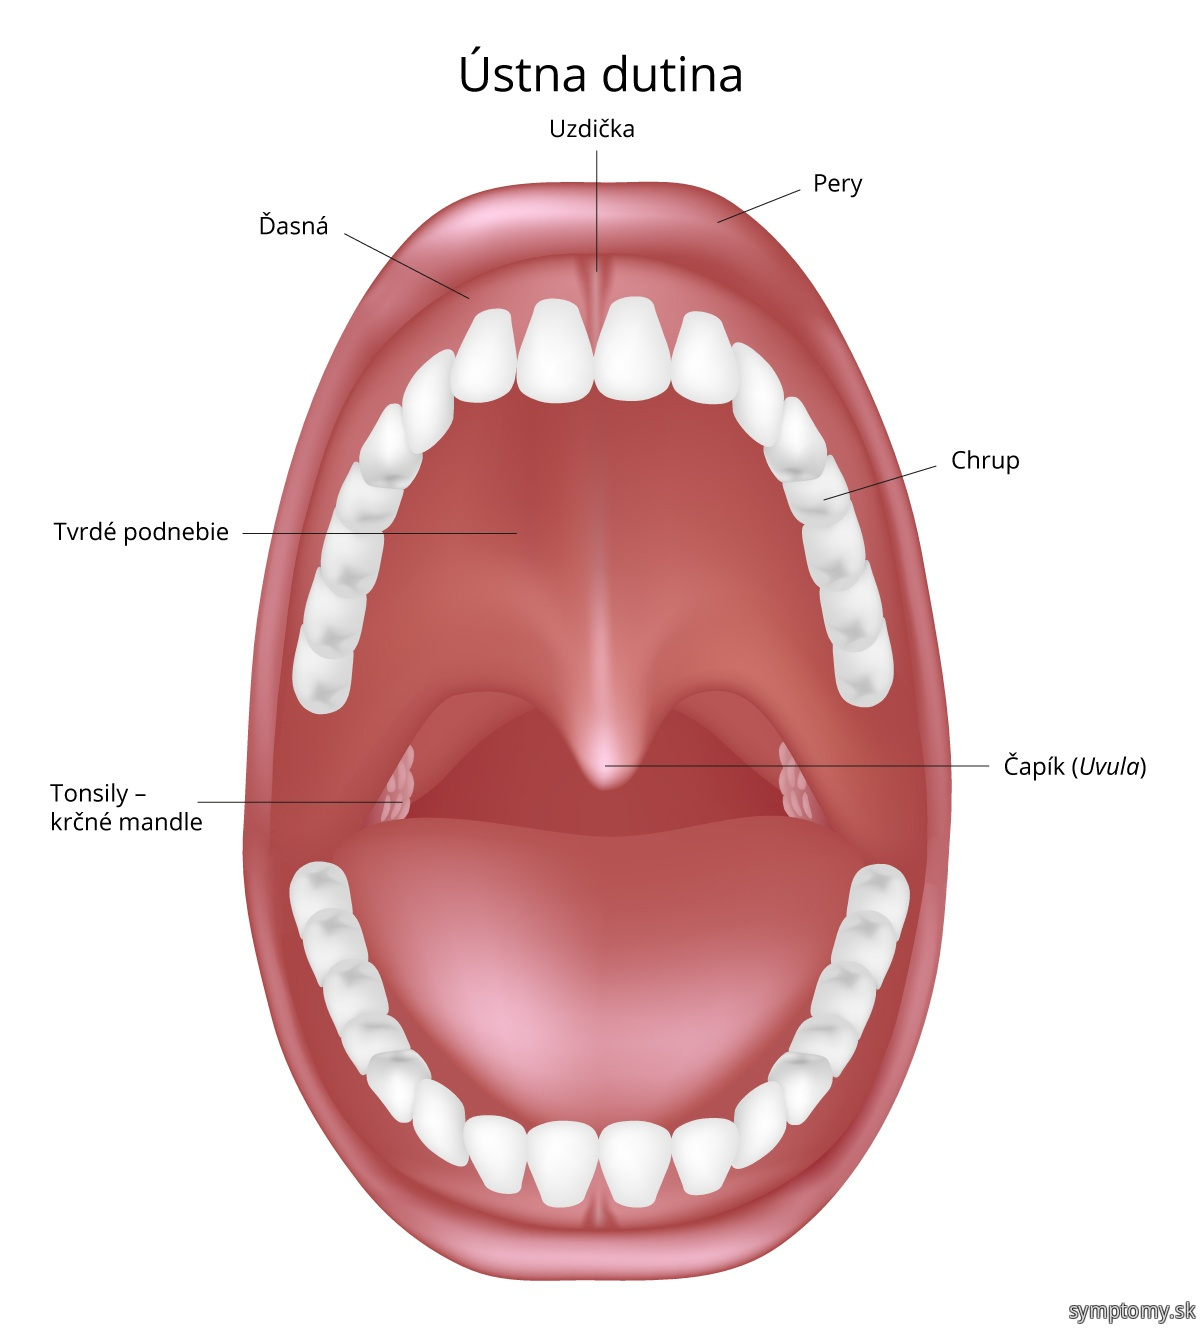 Dutina - ústna